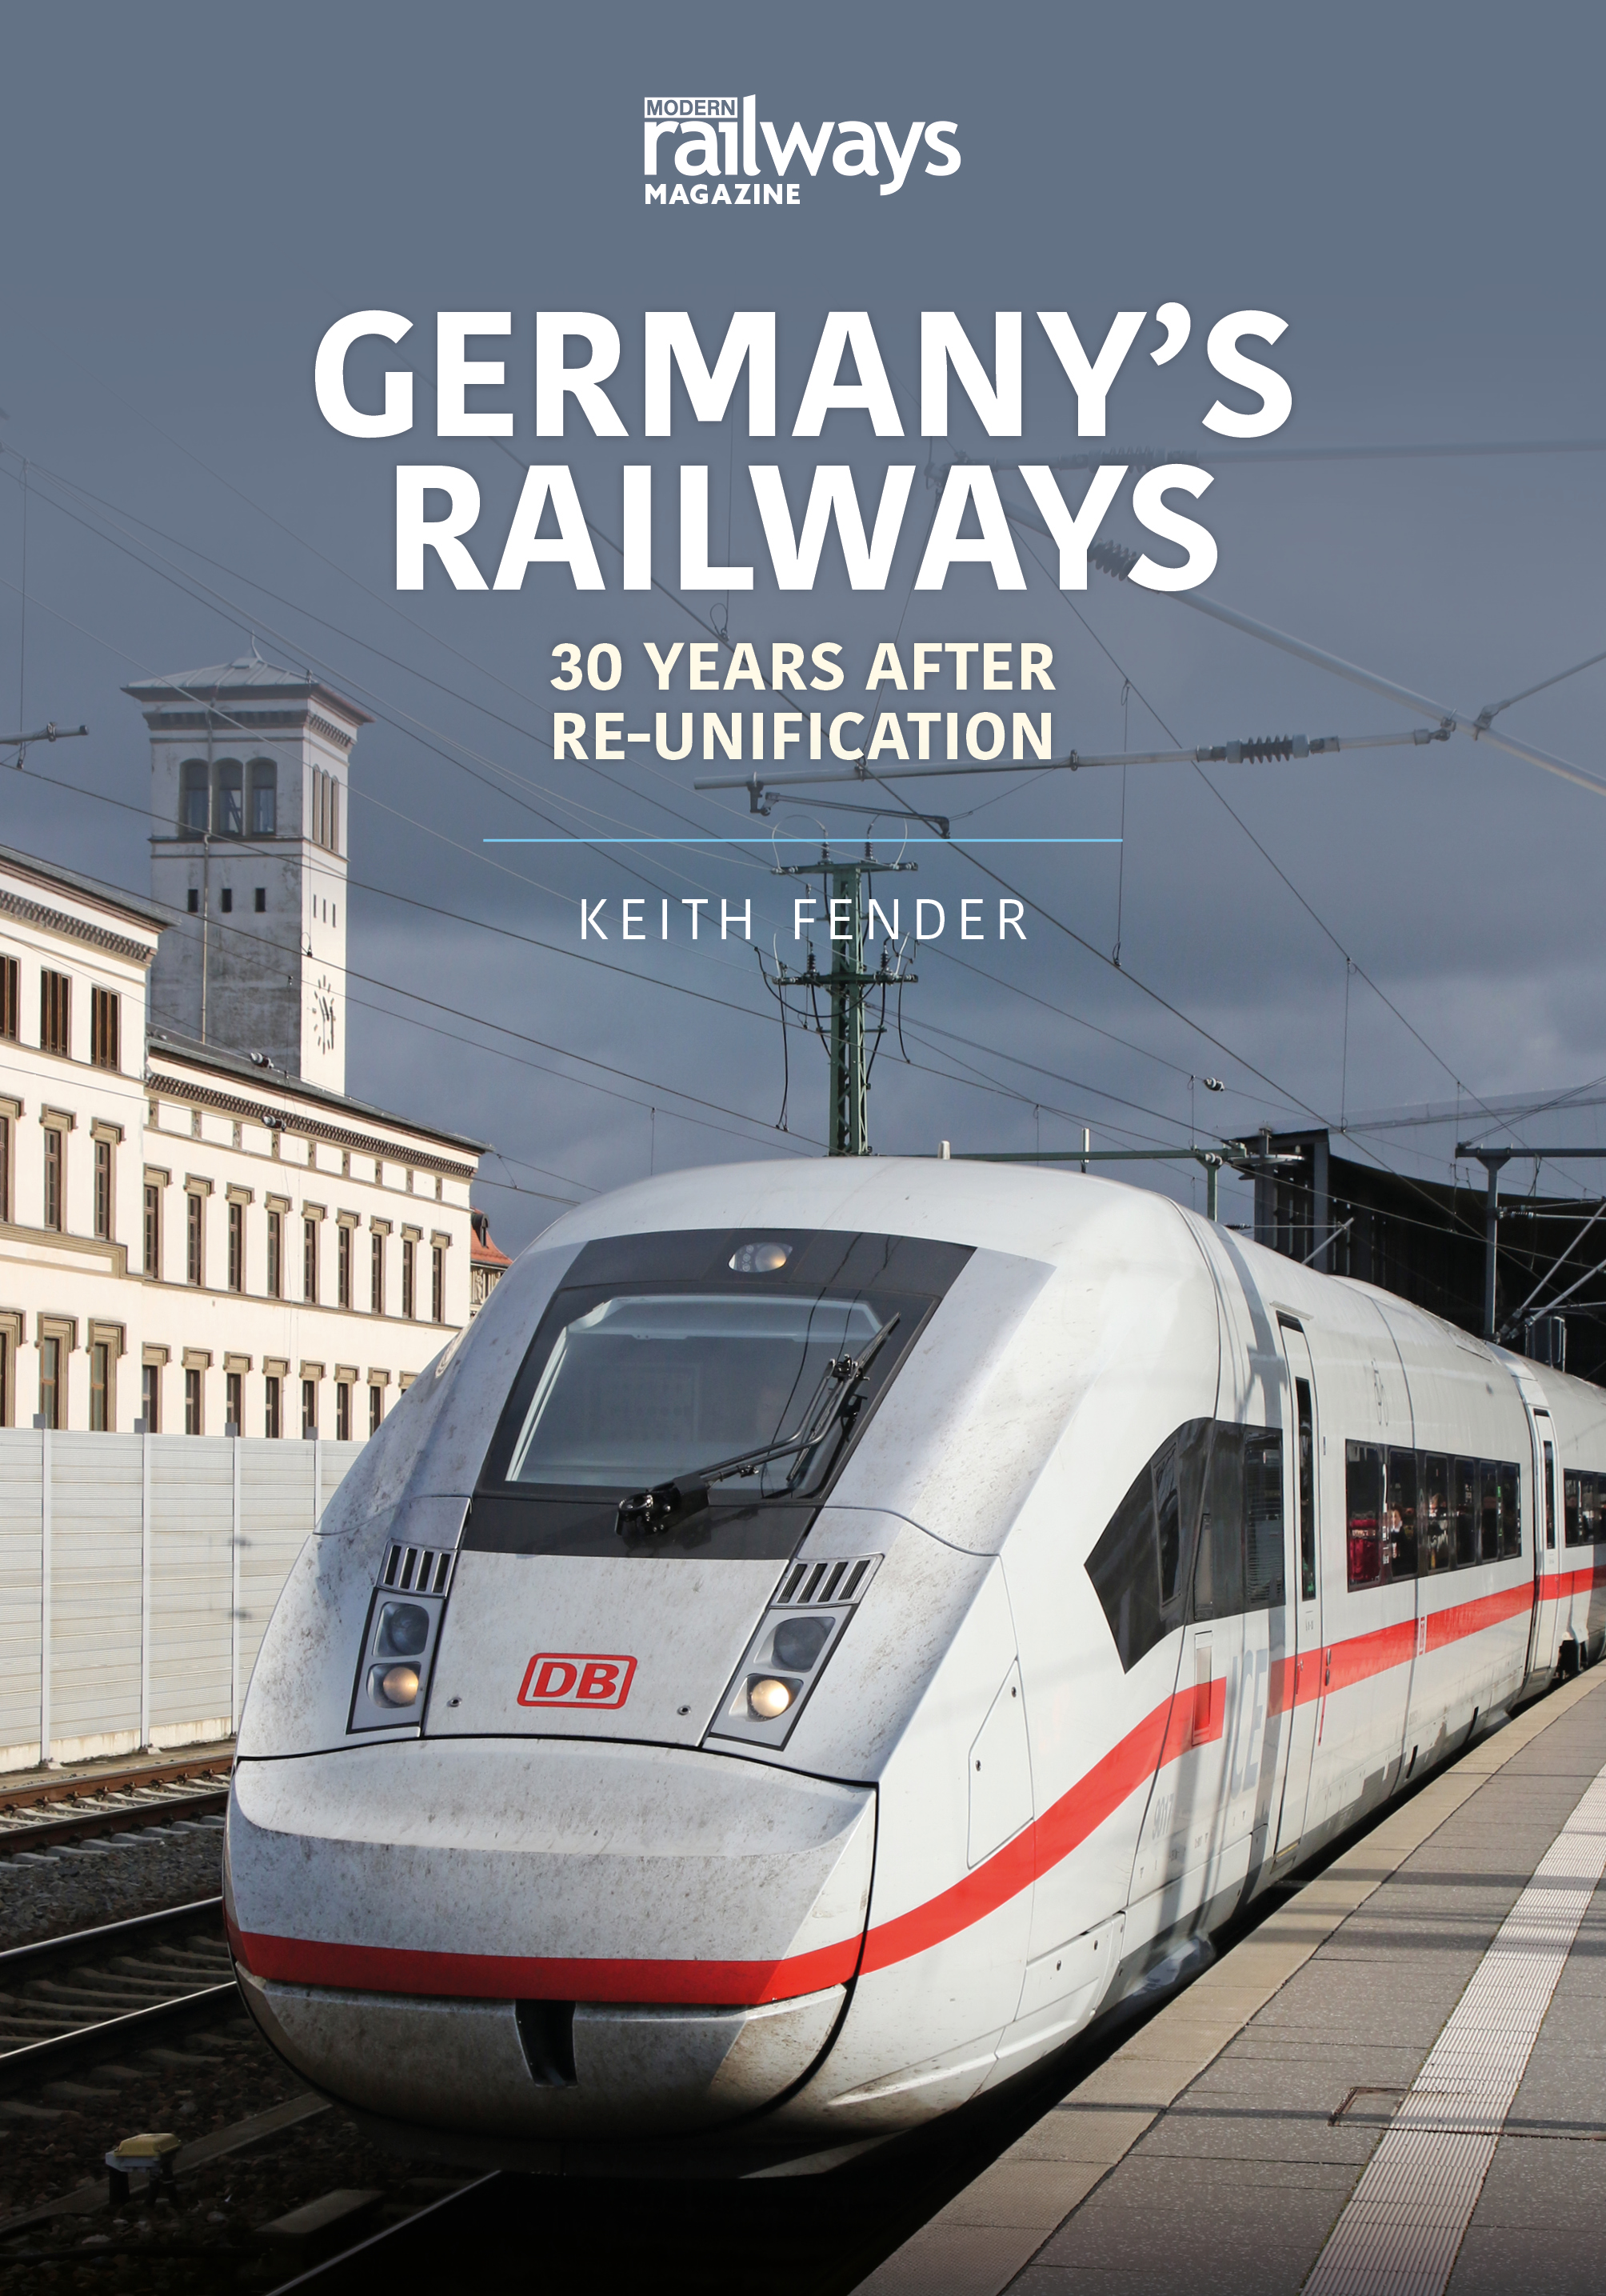 Germany's Railways